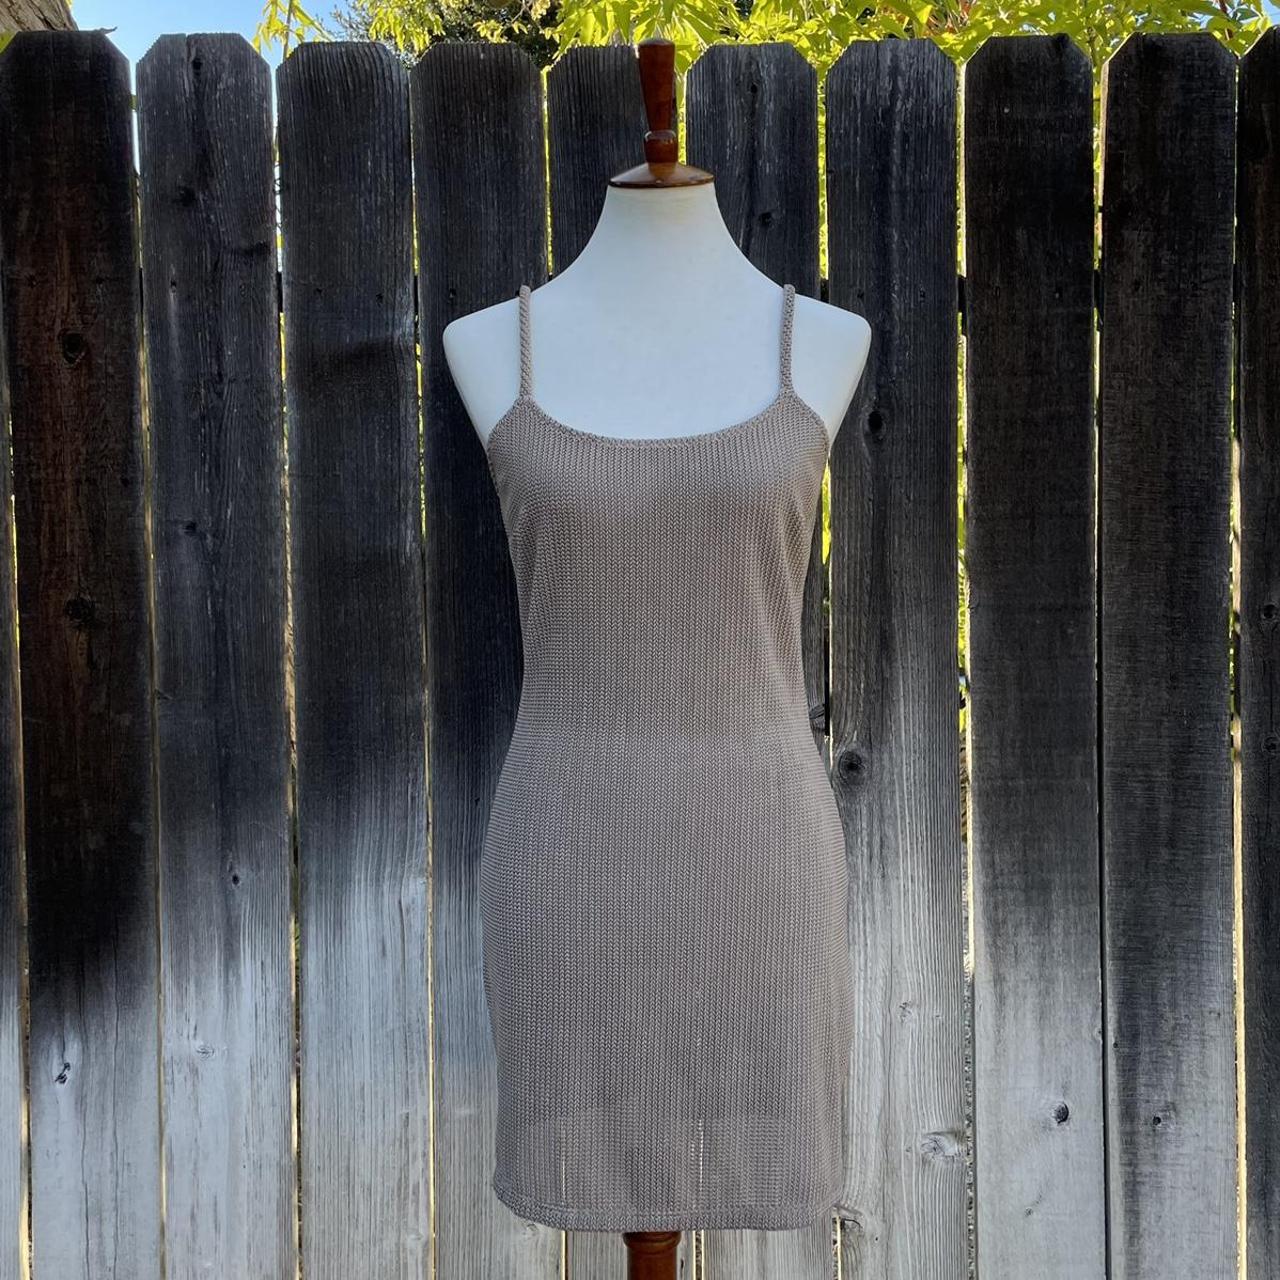 Vintage designer mini dress. It’s a sheer... - Depop